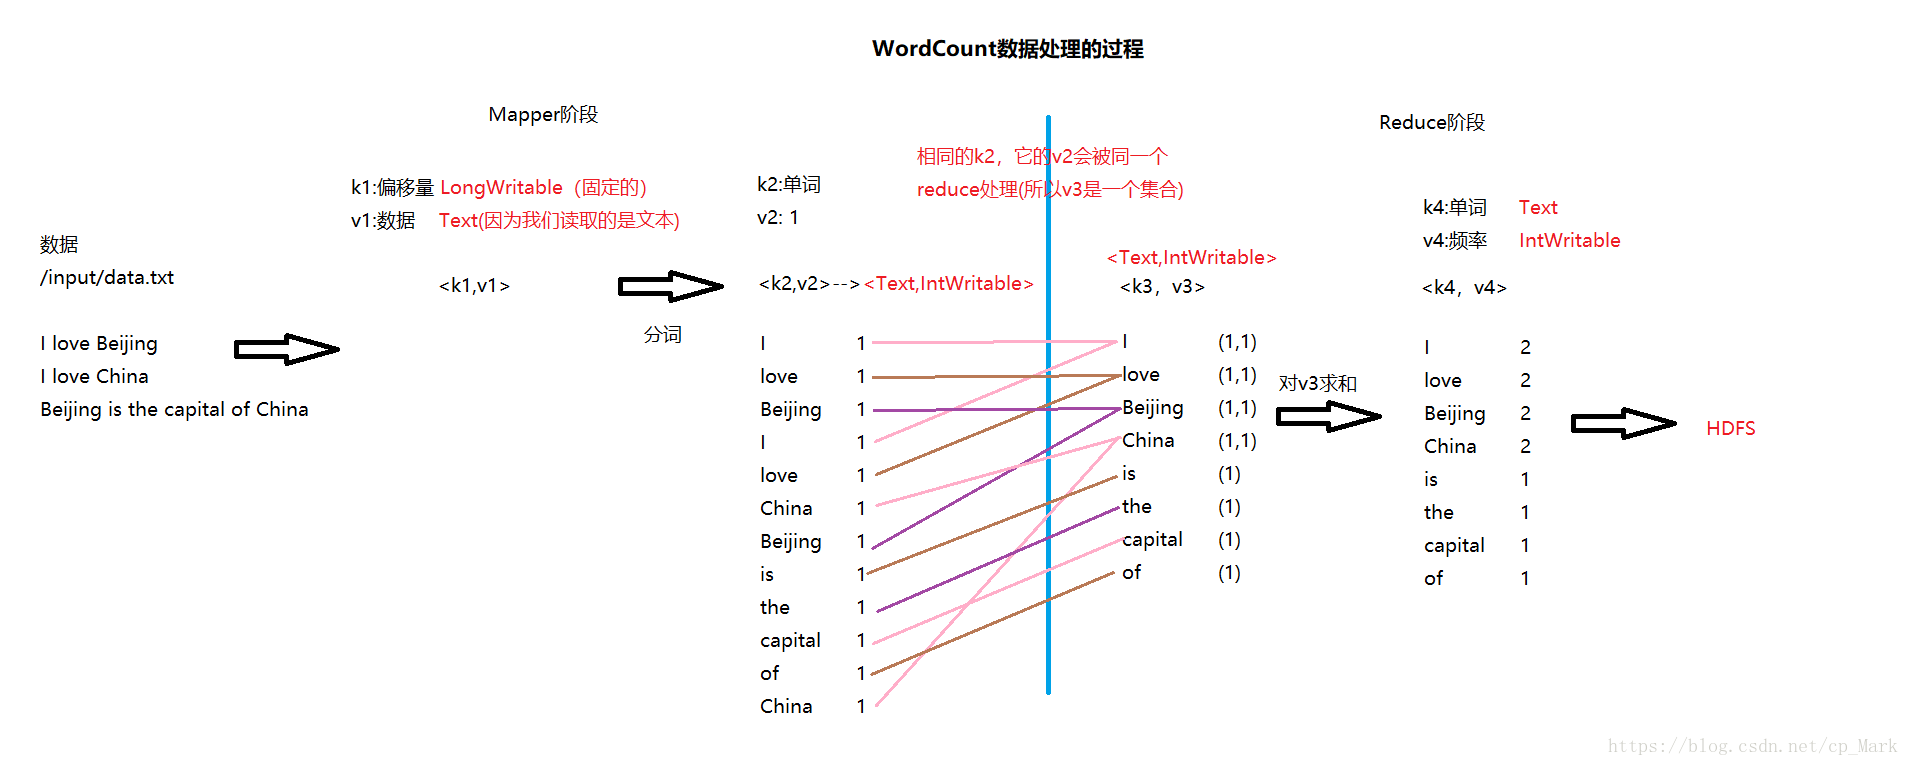 WordCount数据处理过程